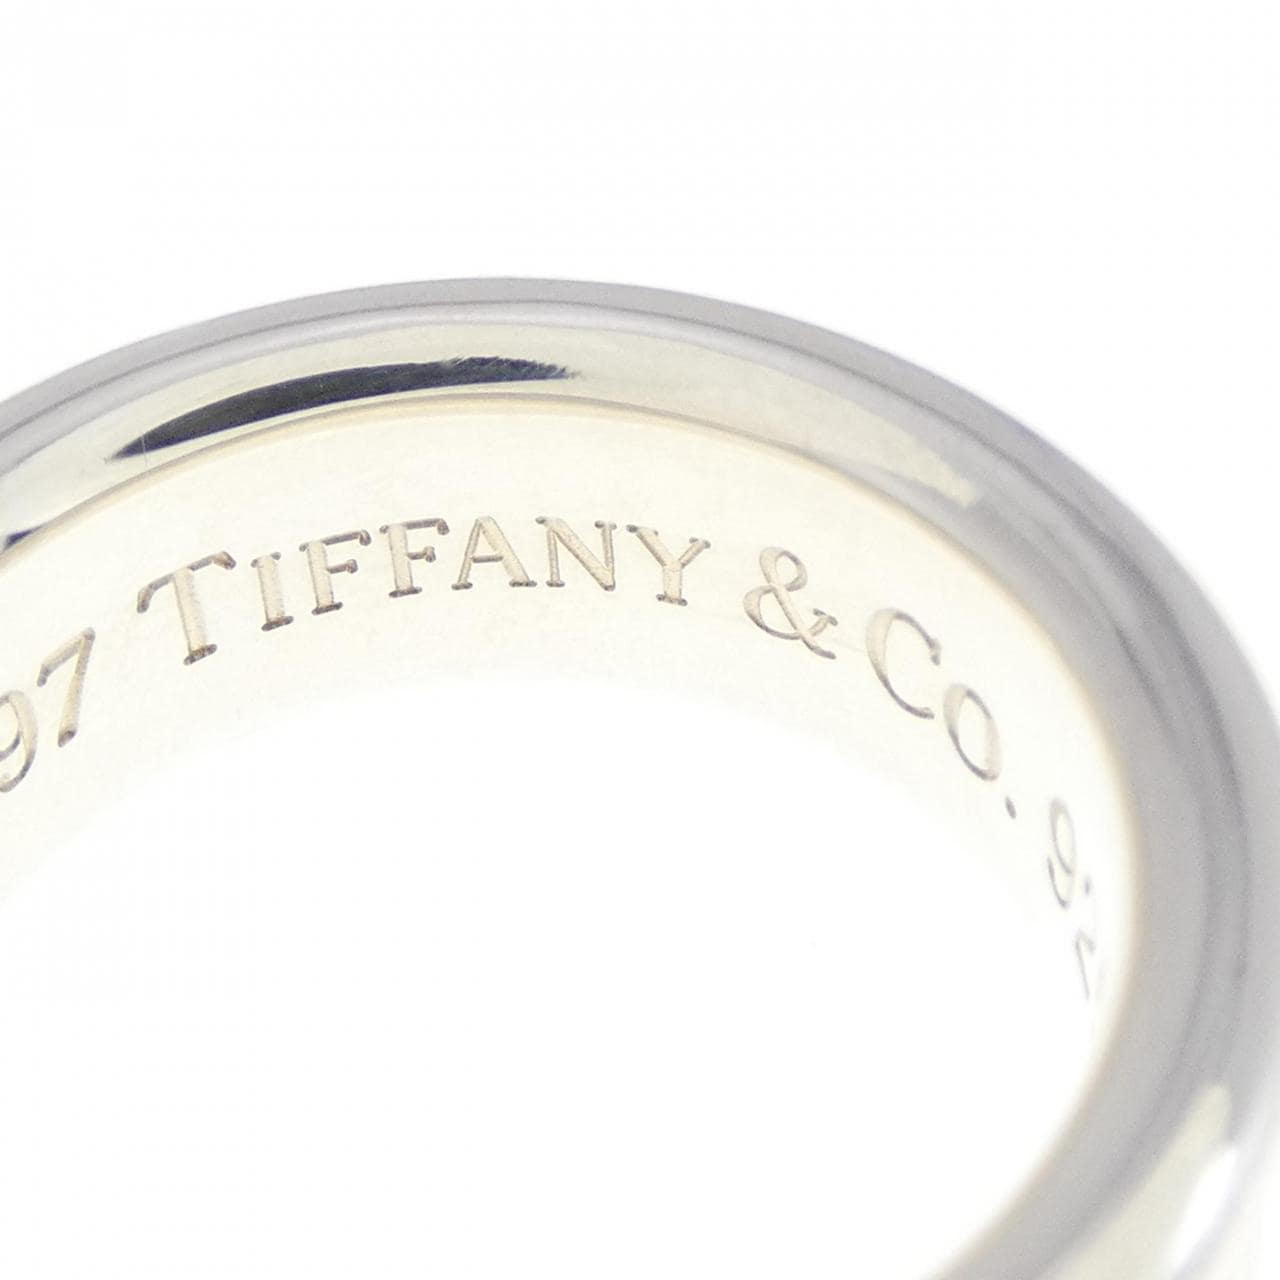 TIFFANY 1837 ring